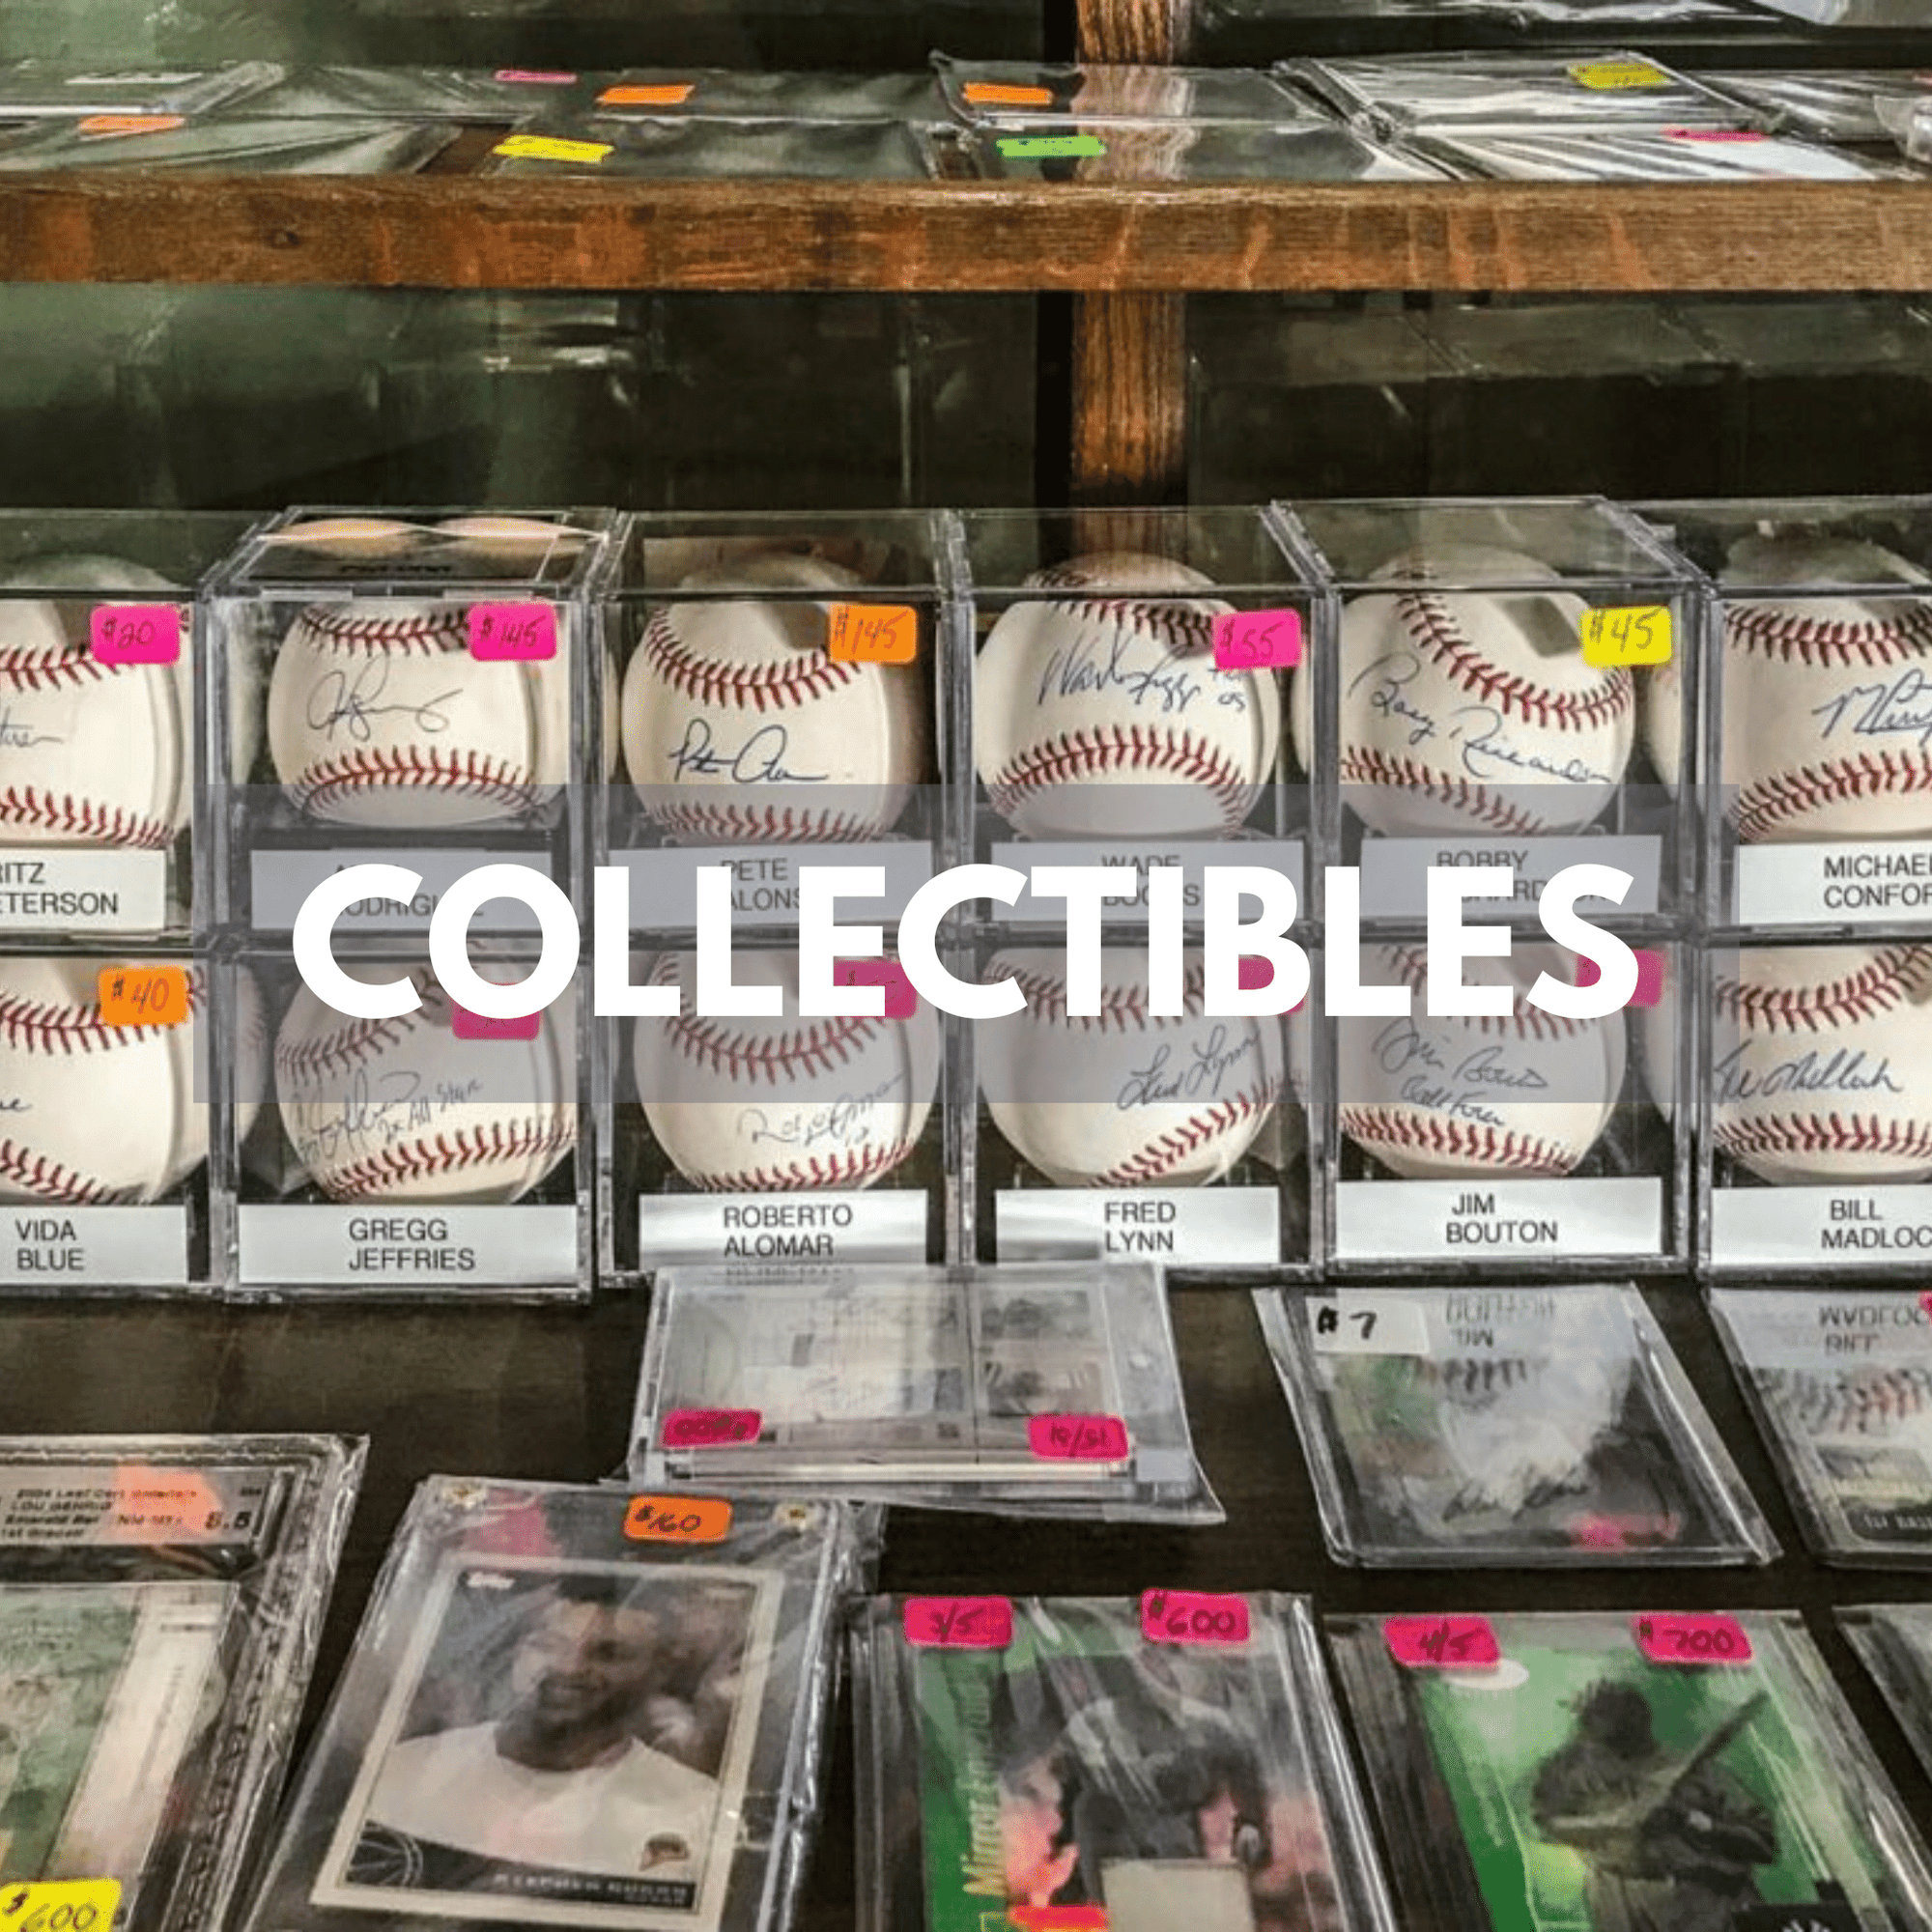 image of baseballs and baseball cards